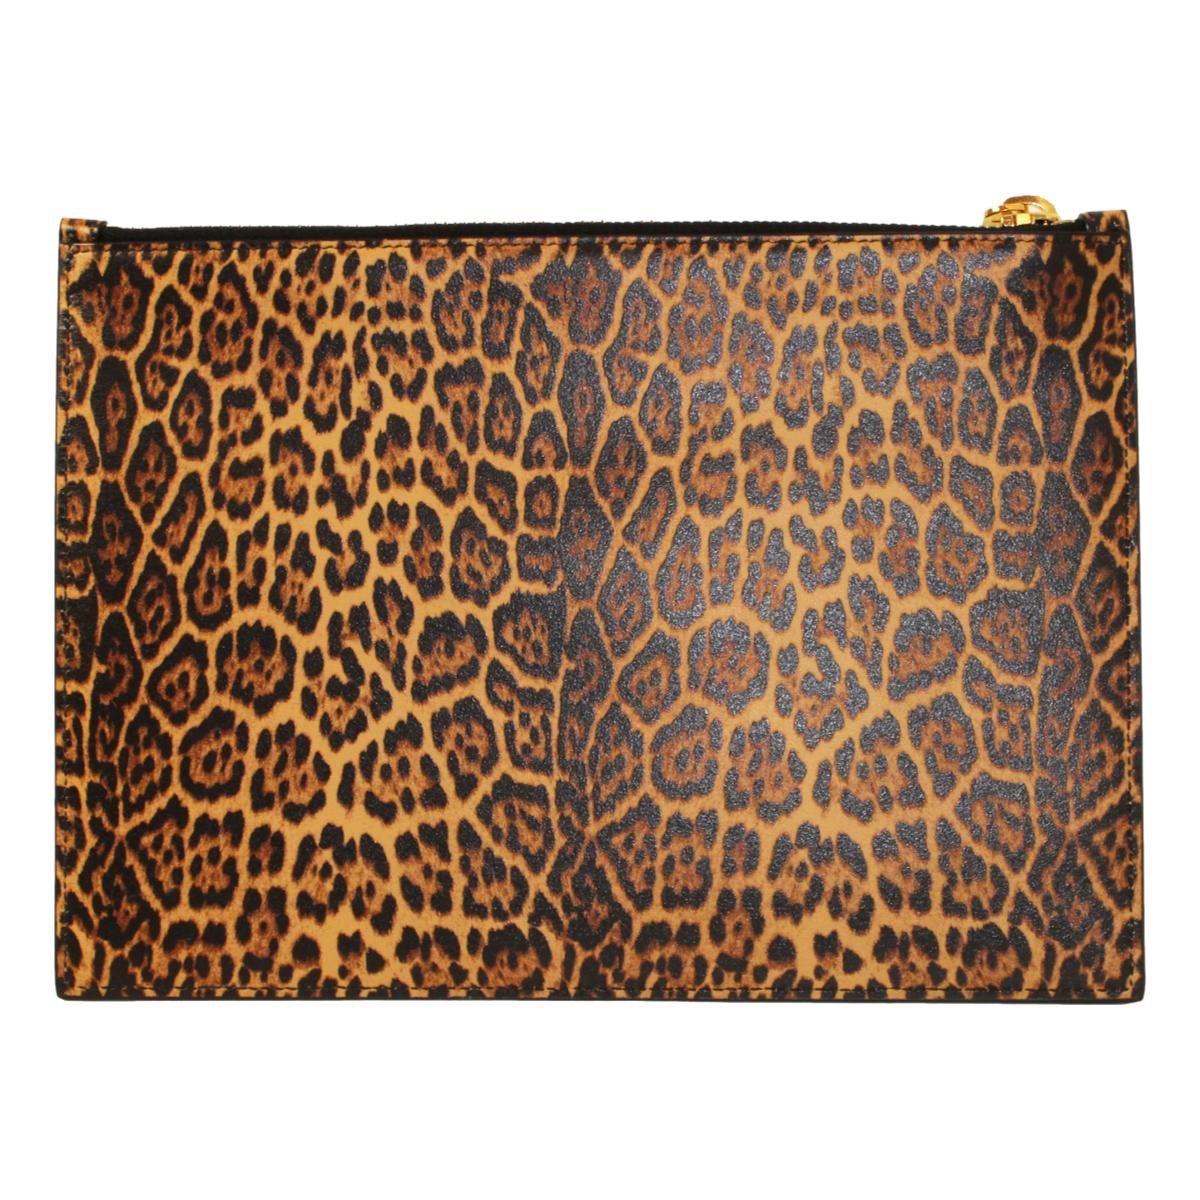 Saint Laurent Leopard Printed Calfskin Leather Medium Pouch 635098 - LUXURYMRKT